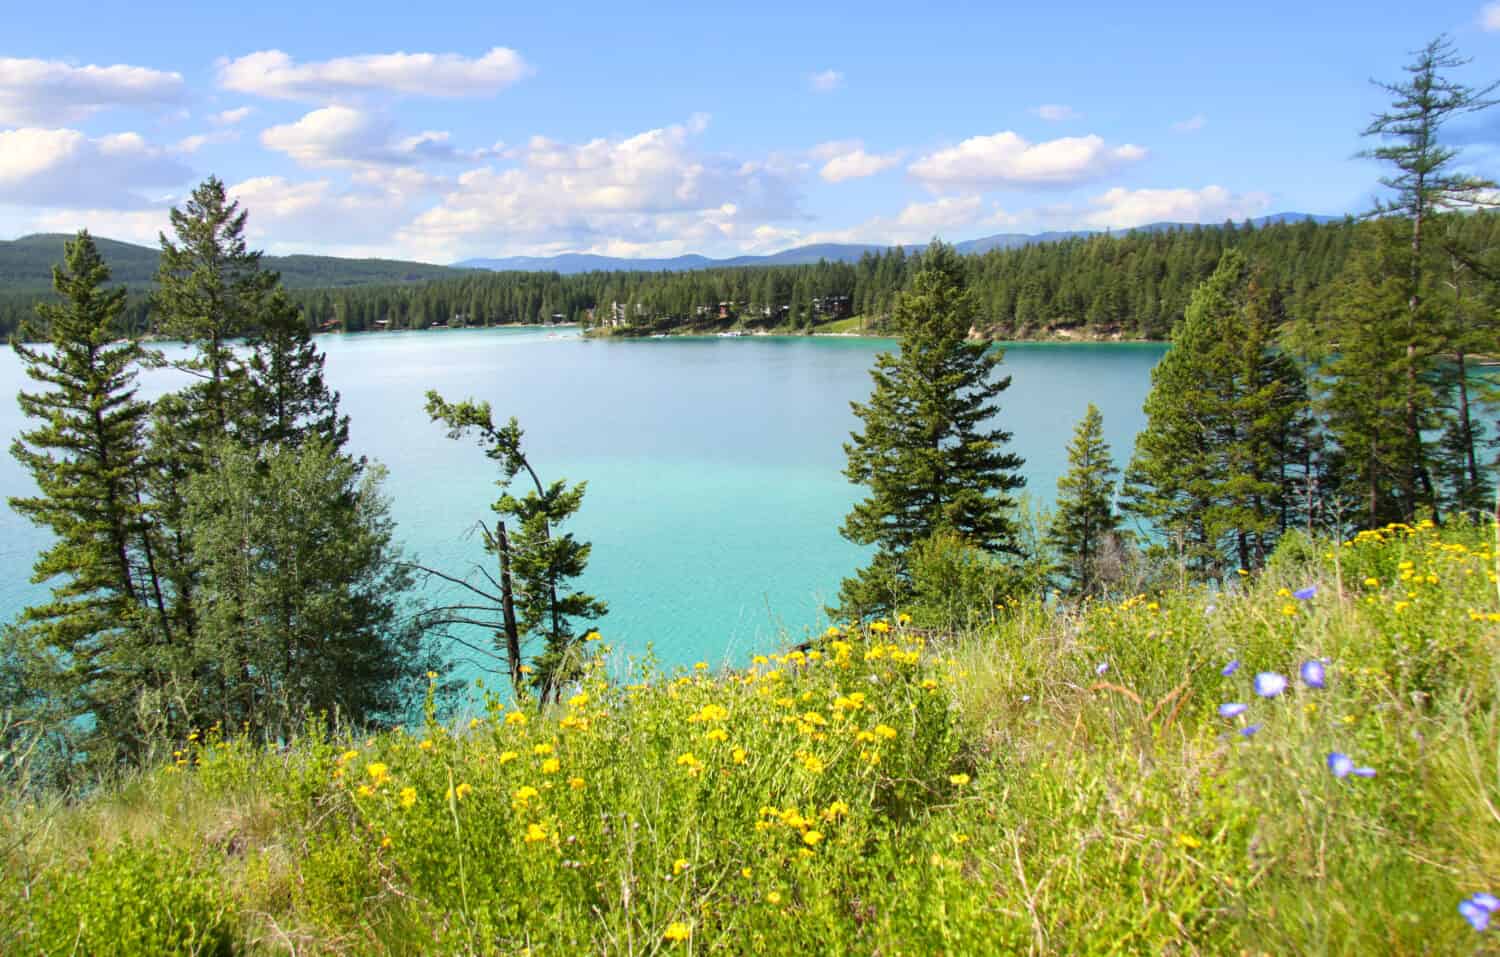 Scenic Dickey lake in Montana near Glacier national park